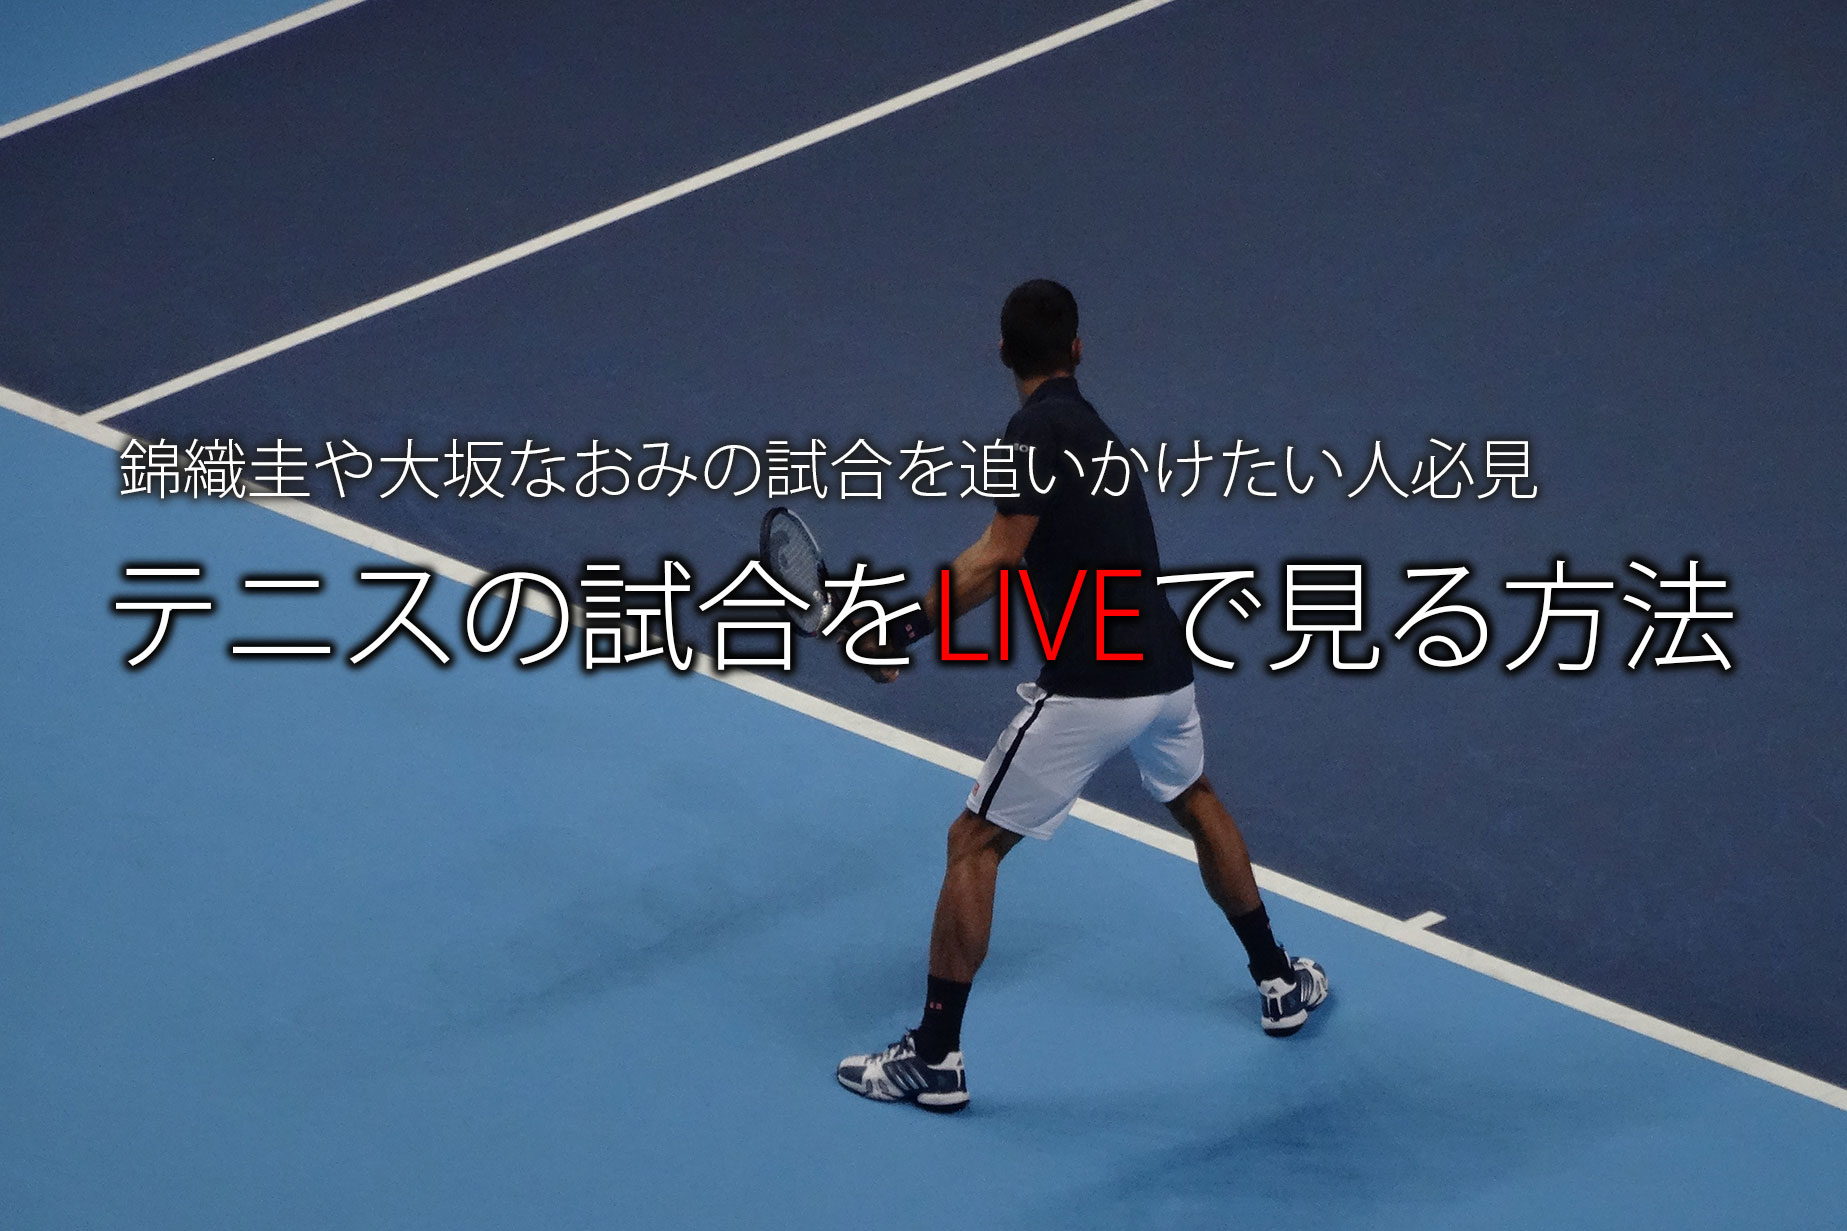 テニス 錦織圭や大坂なおみの試合中継を見る方法 無料観戦あり ココロノブログ